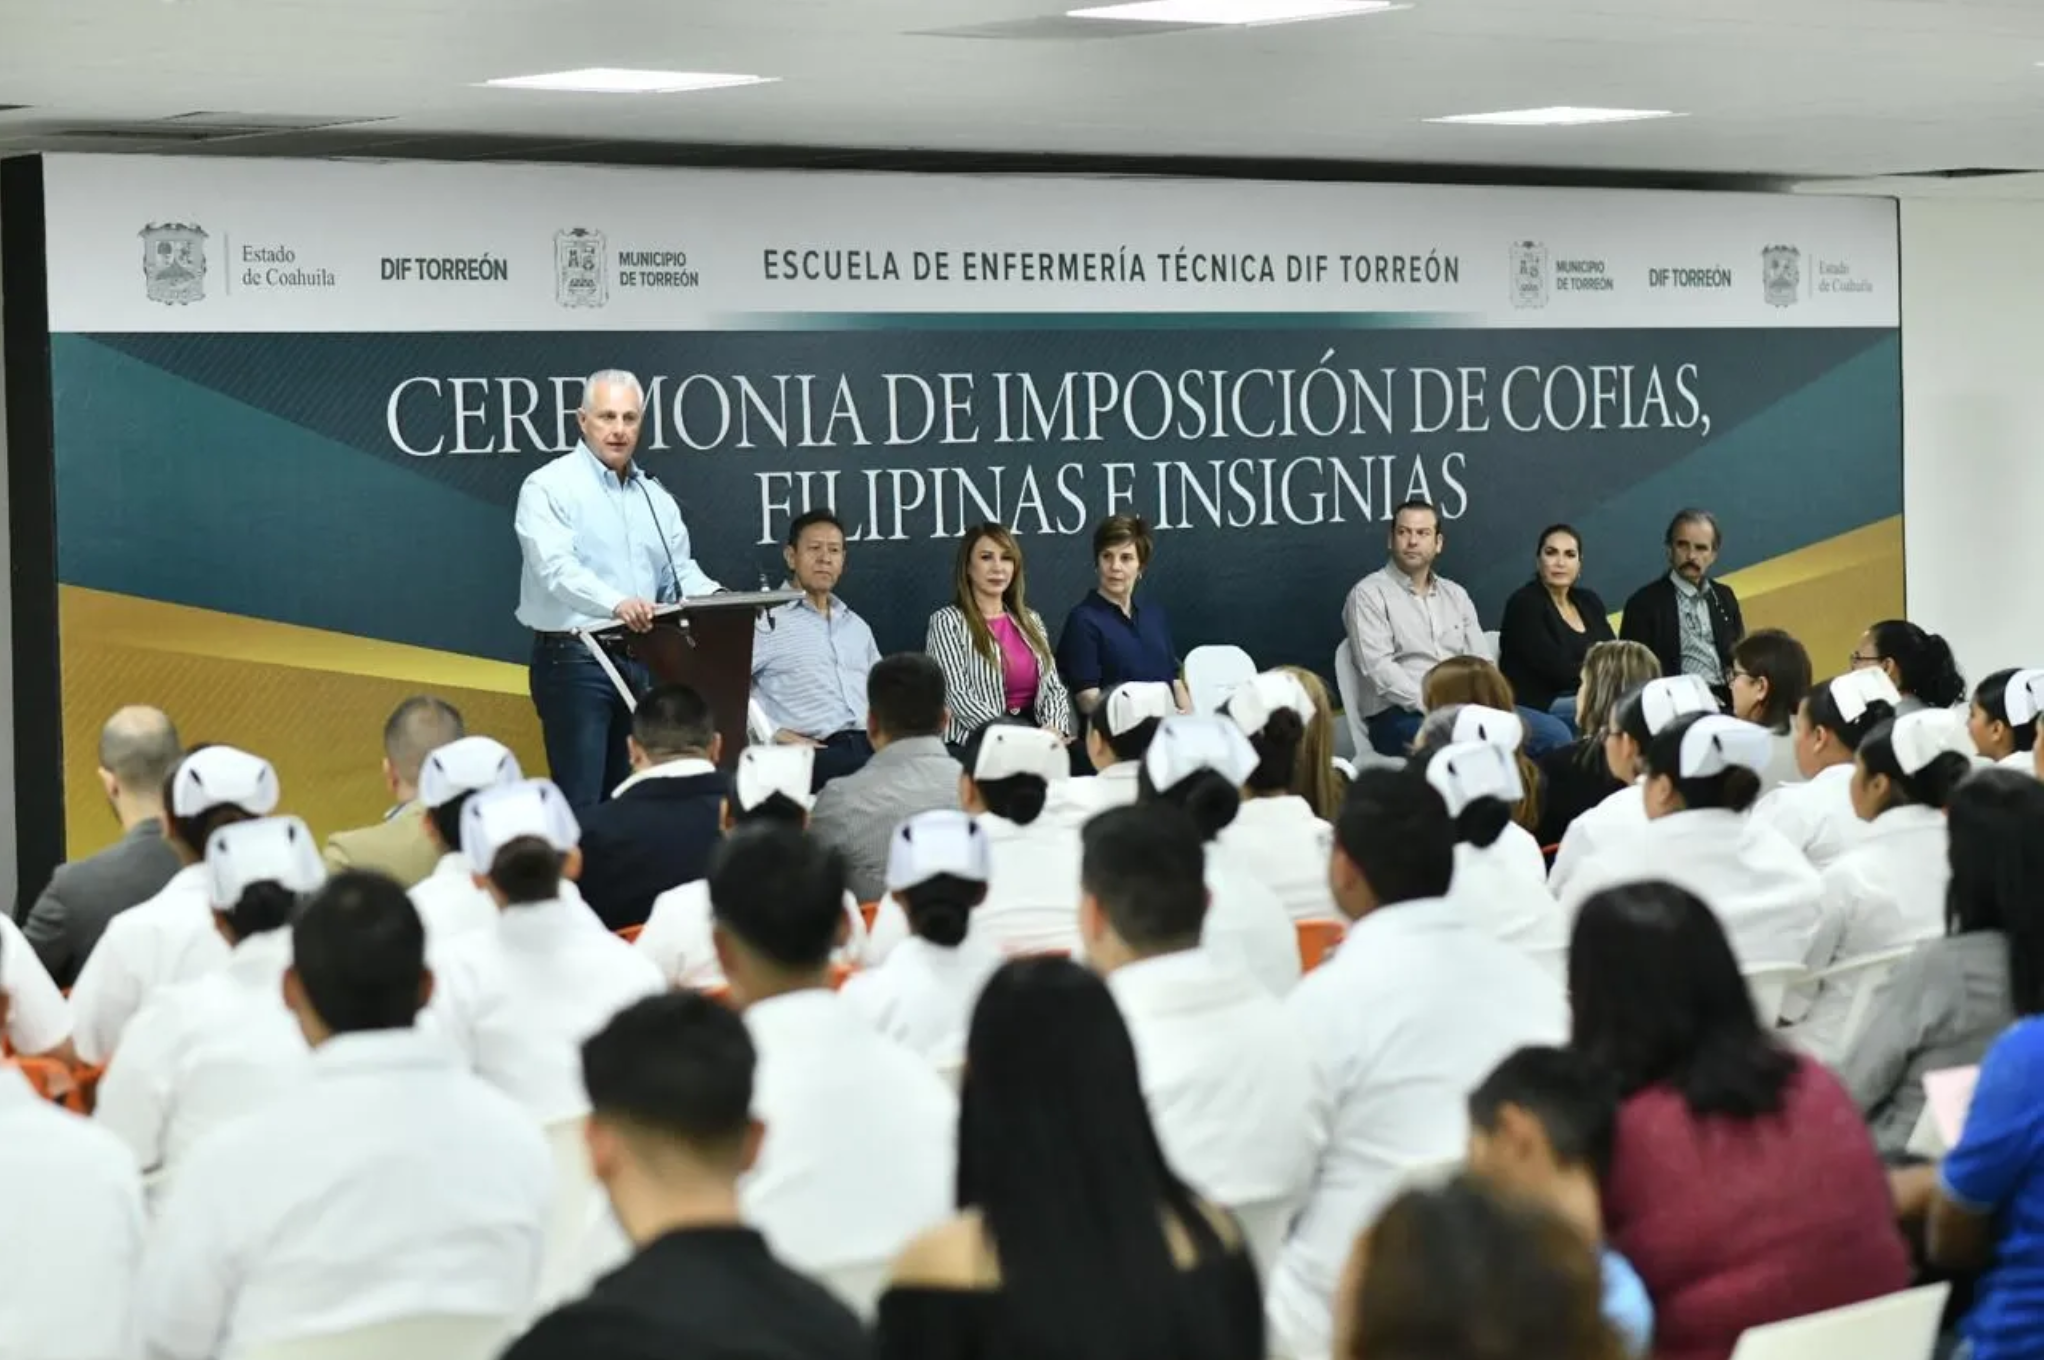 El alcalde Román Alberto Cepeda González realizó la imposición de cofias y filipinas